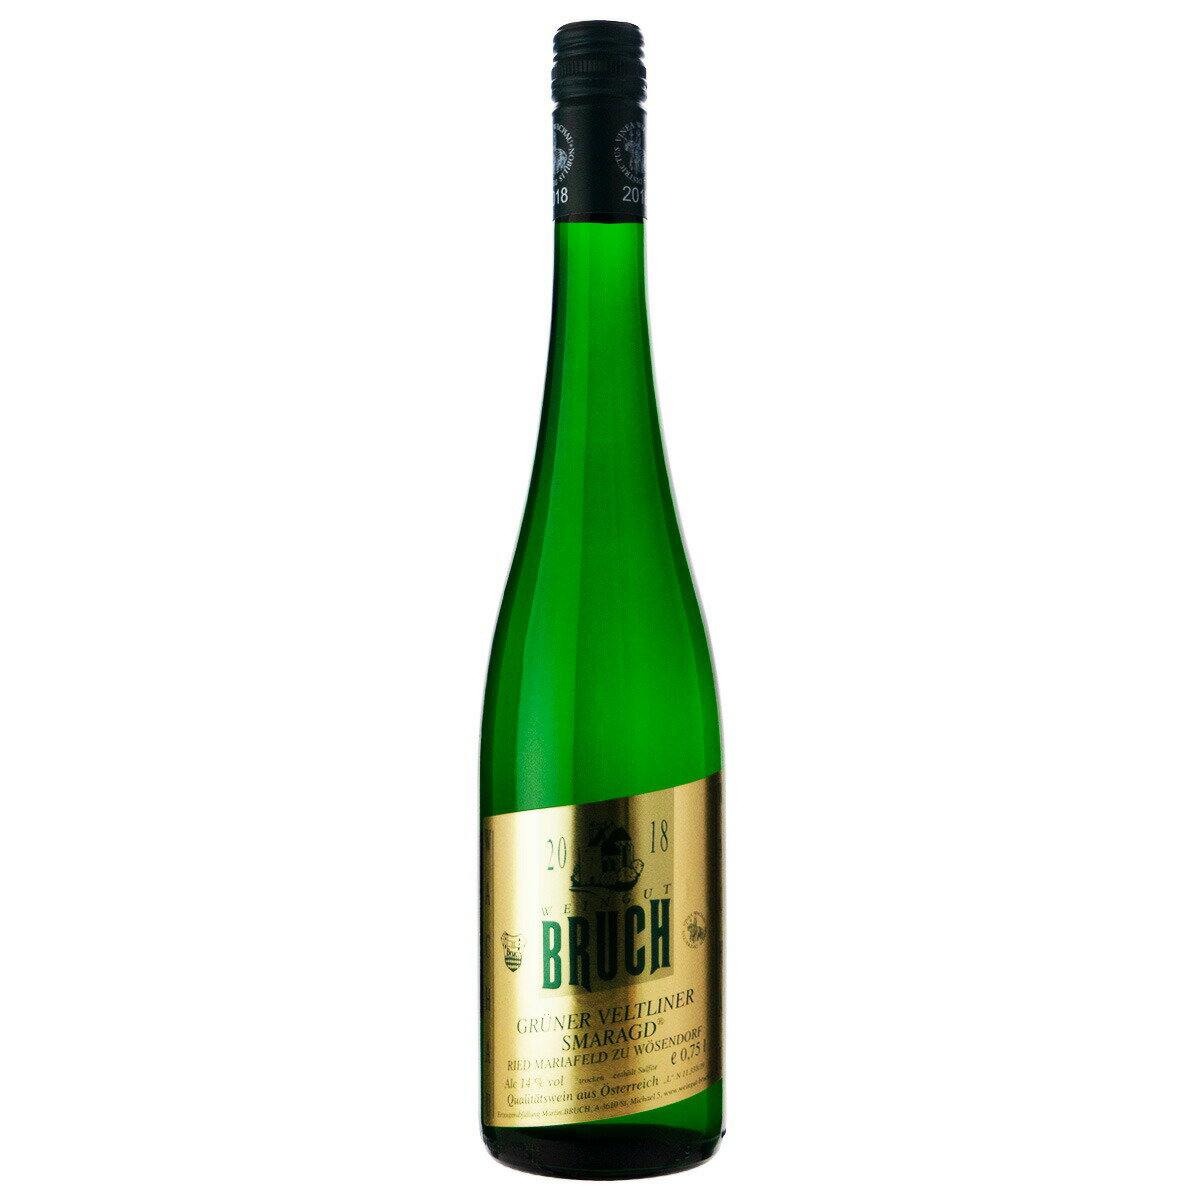 ブルヒ ワイナリー グリューナー ヴェルトリーナー スマラクト 2018 750ml 白ワイン オーストリア (a06-6512)